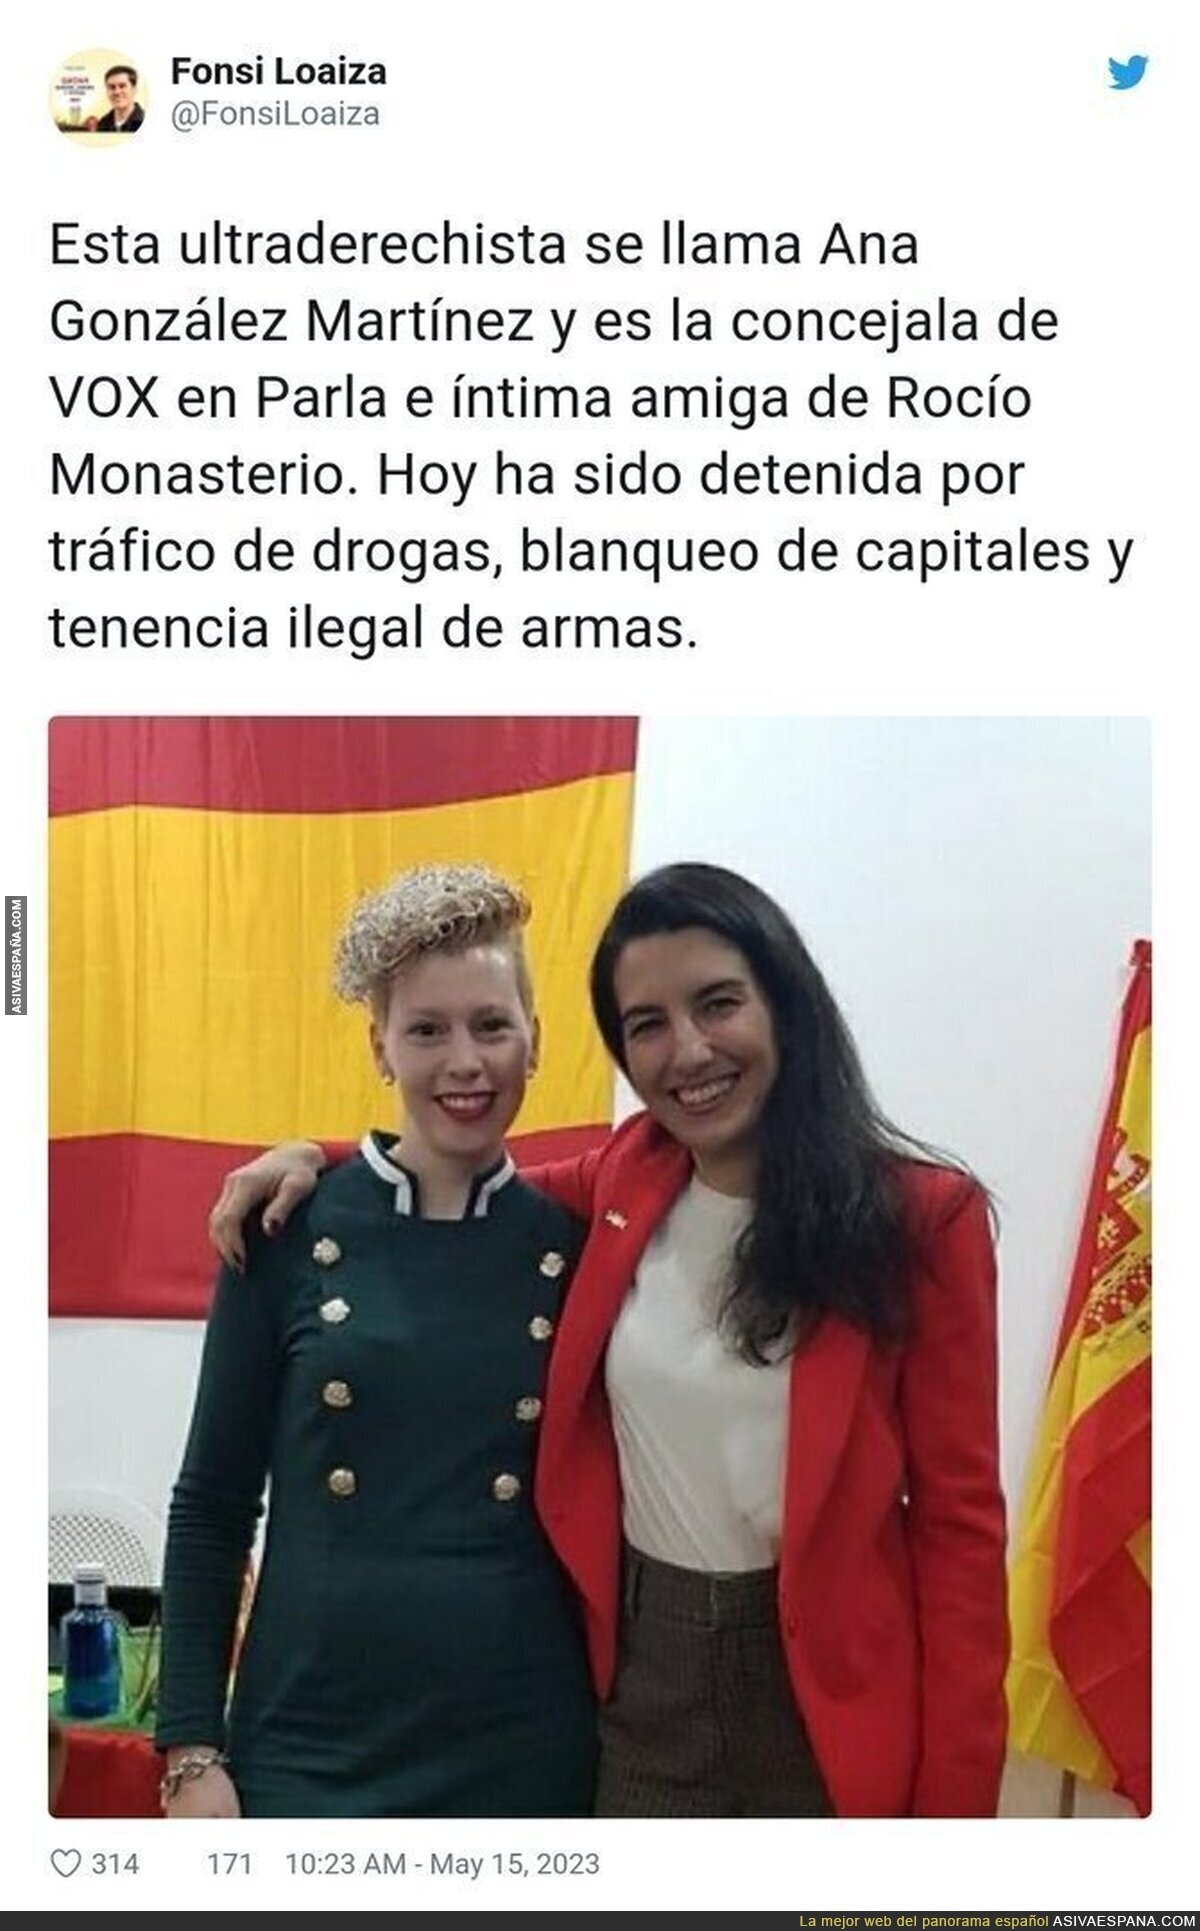 La gente que va a levantar España con VOX